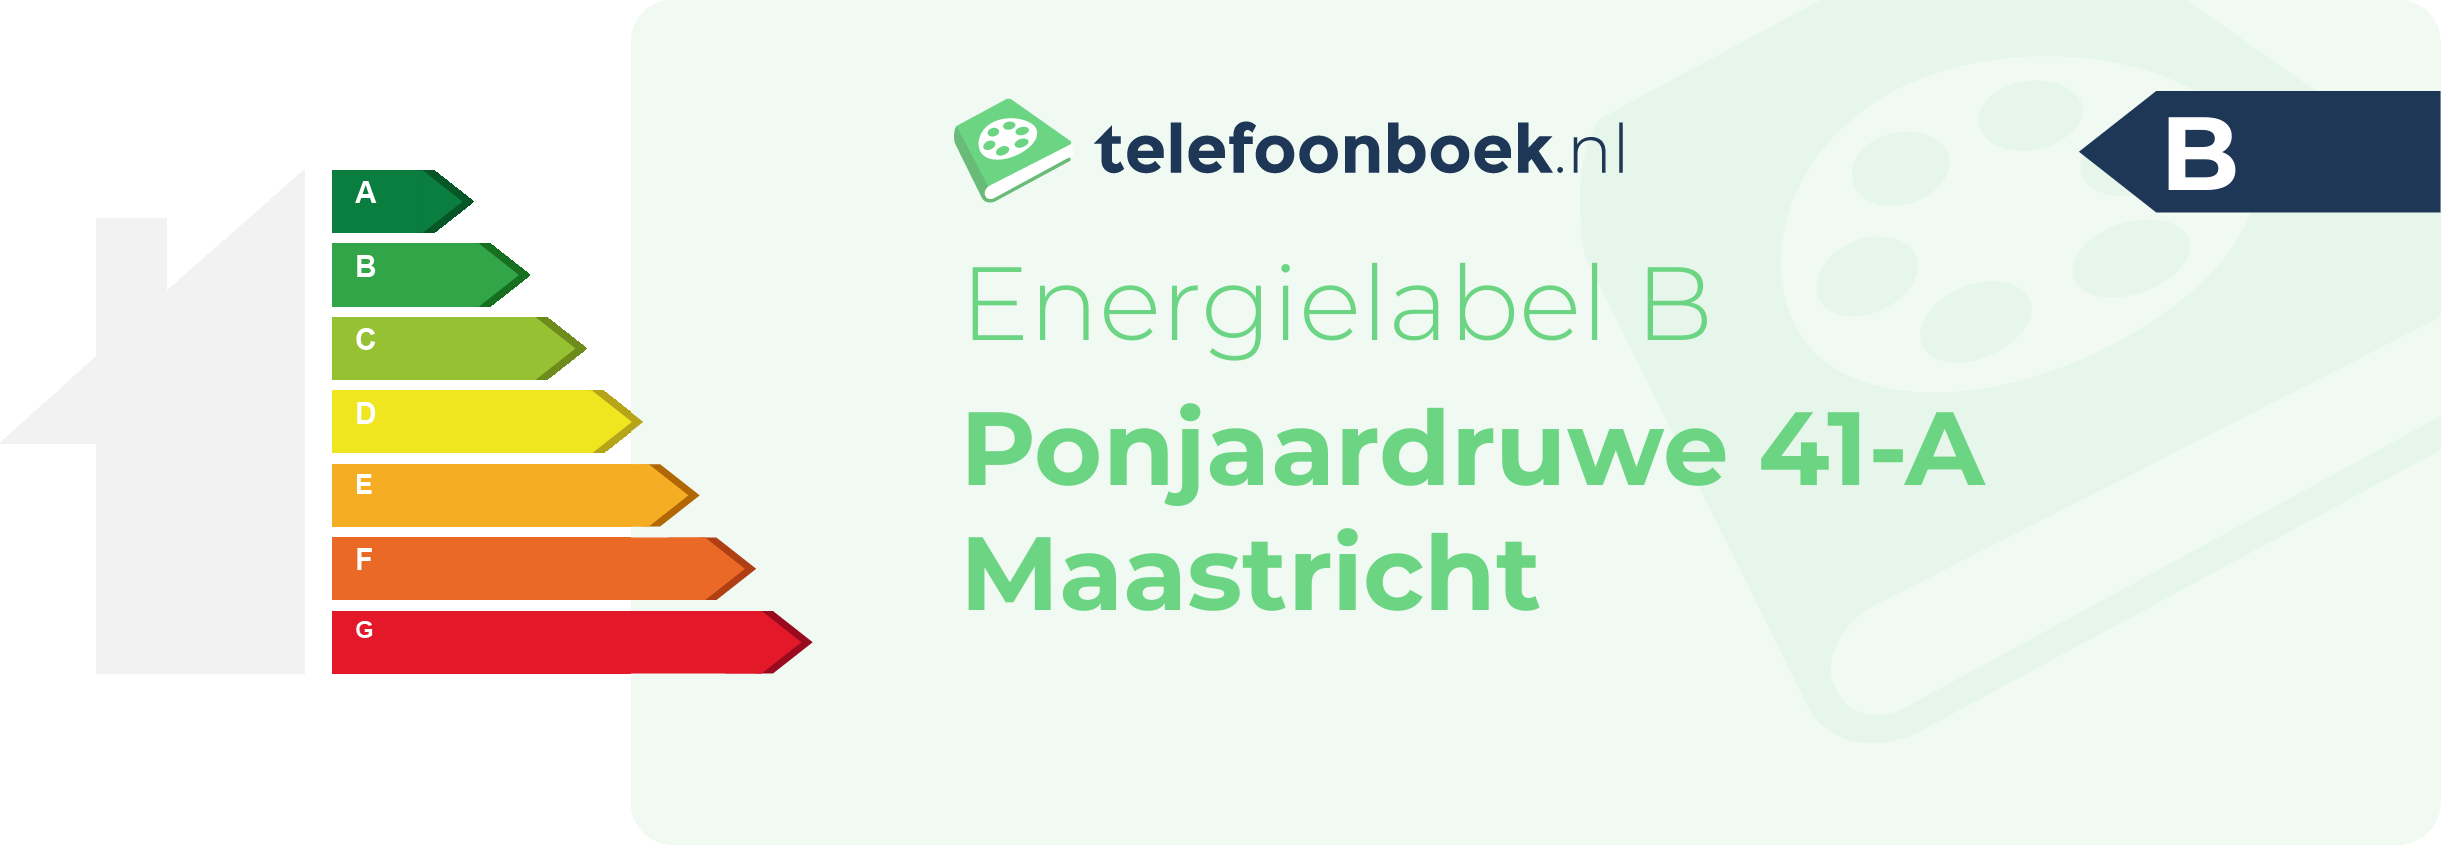 Energielabel Ponjaardruwe 41-A Maastricht